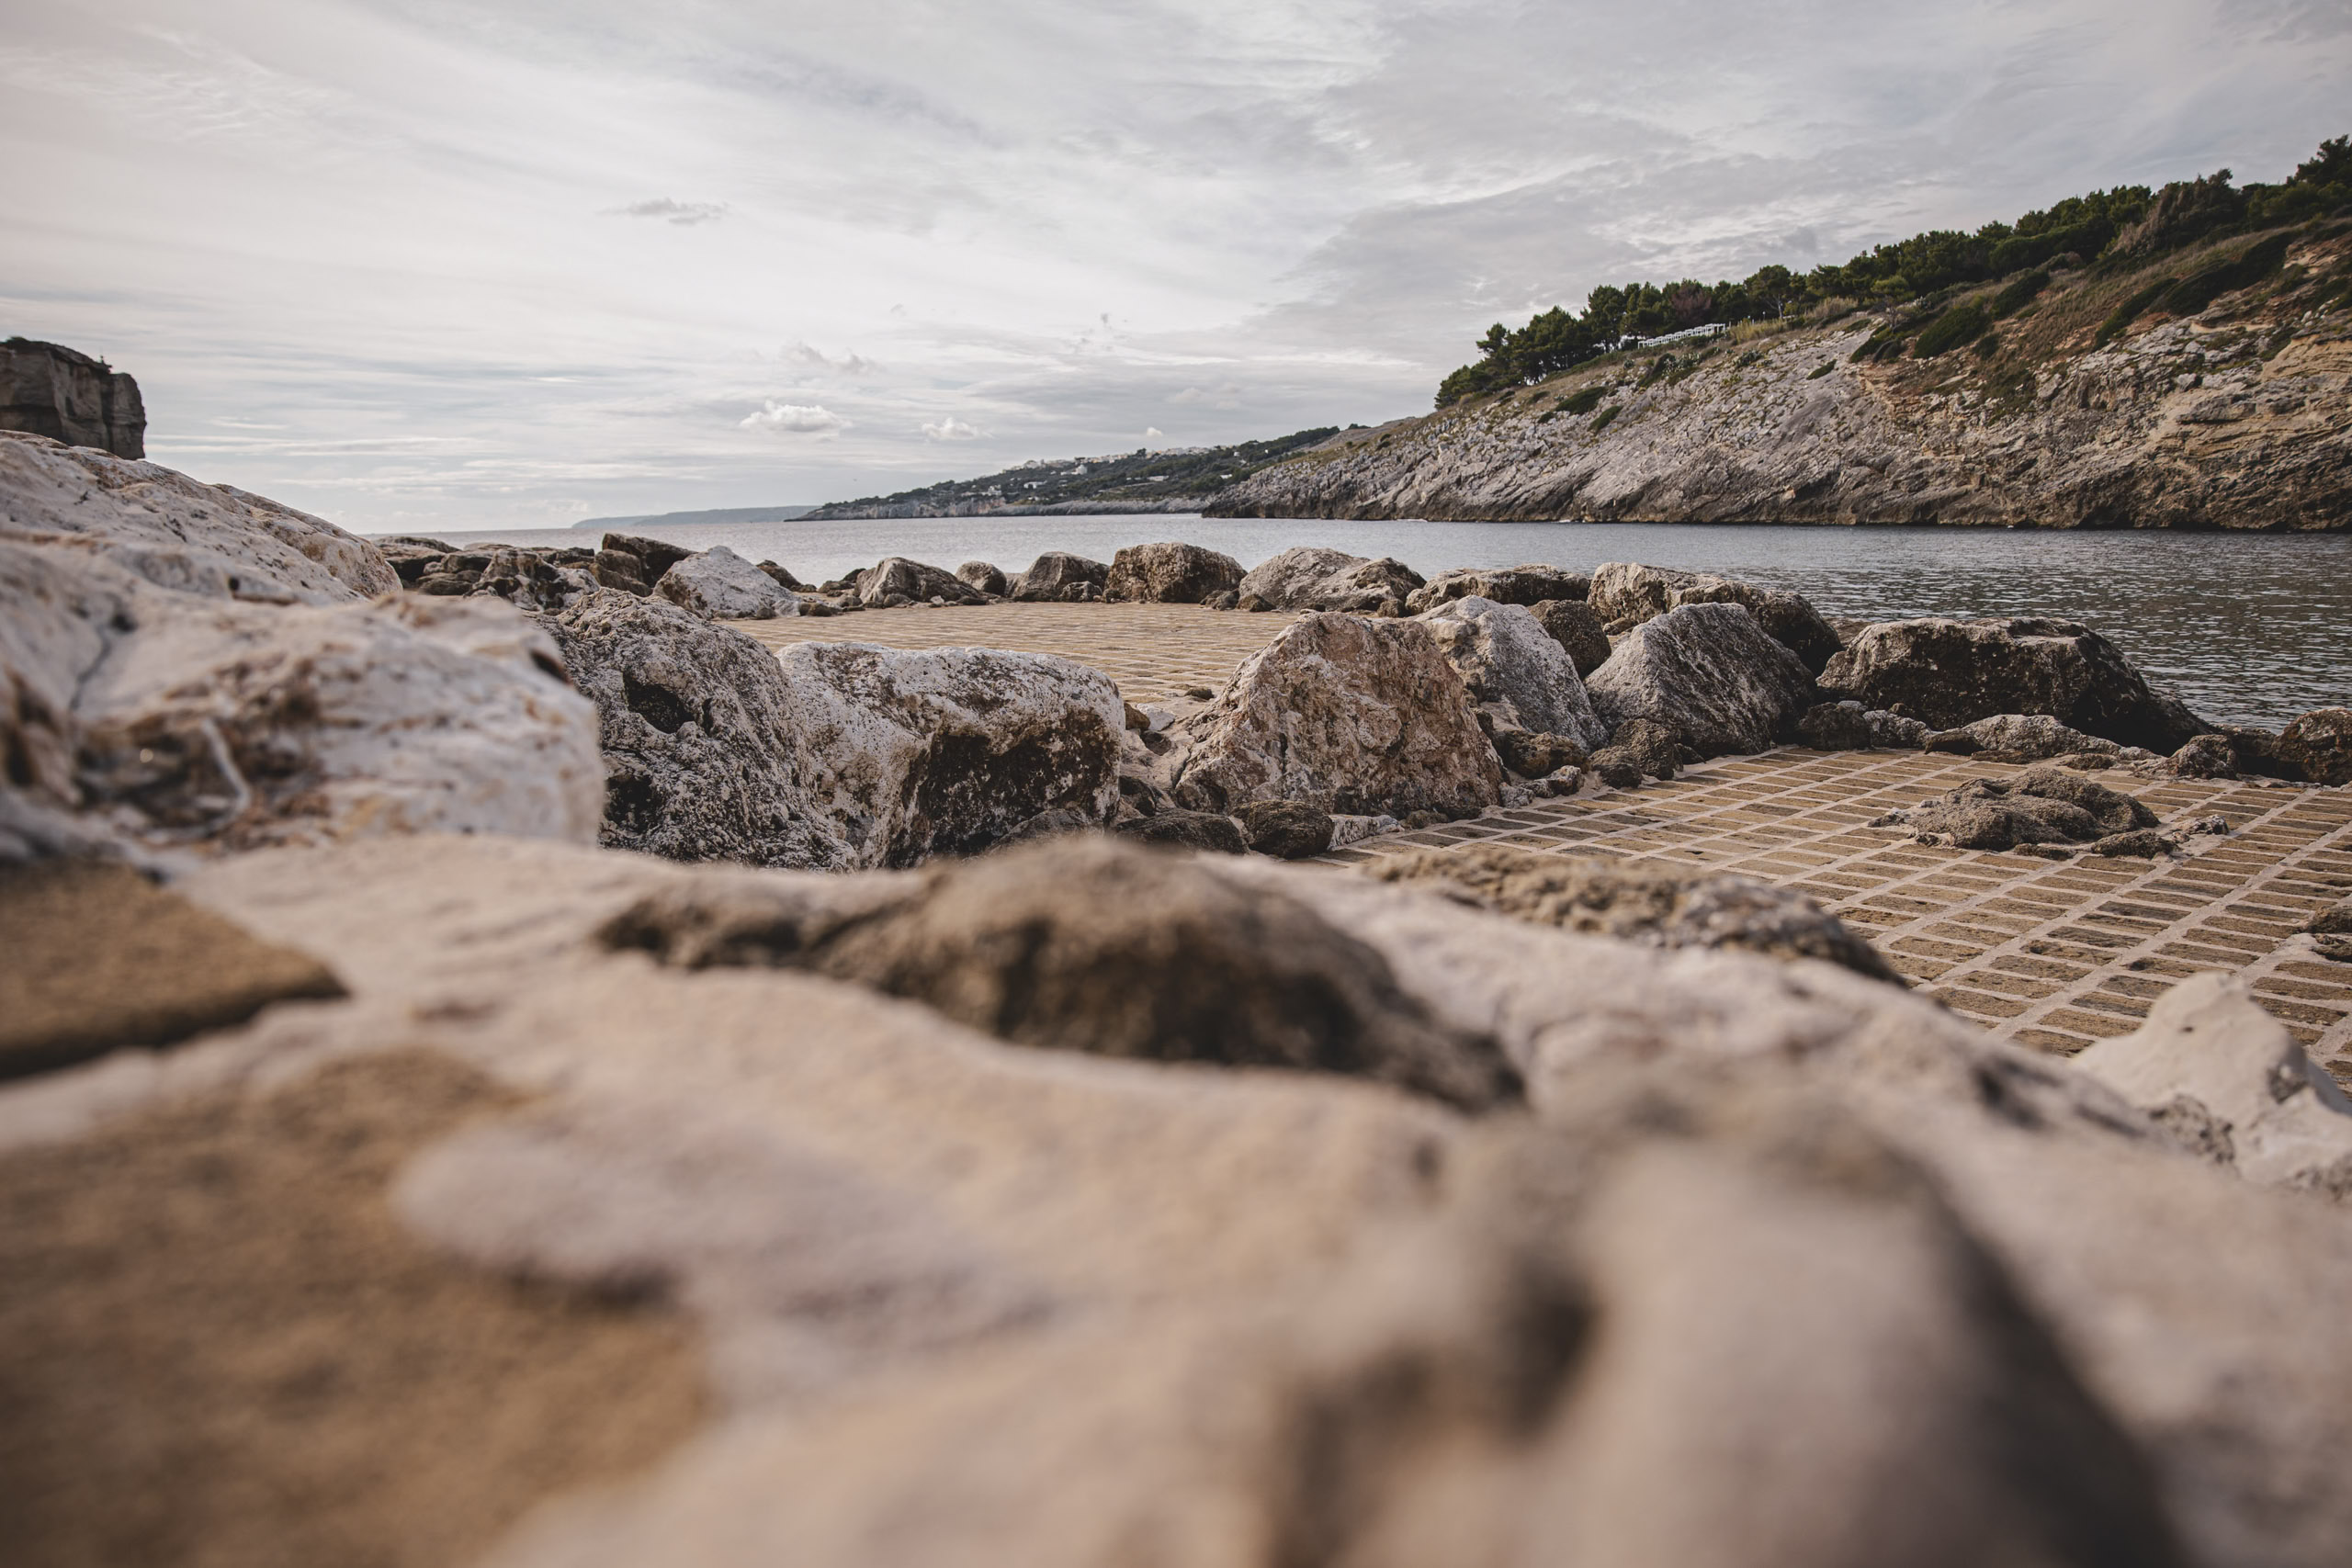 Raue, strukturierte Felsen im Vordergrund mit einem Steinpfad, der unter einem teilweise bewölkten Himmel zu einem ruhigen Meer führt. In der Ferne sind Hügel sichtbar, die eine ruhige Küstenlandschaft vervollständigen. © Fotografie Tomas Rodriguez